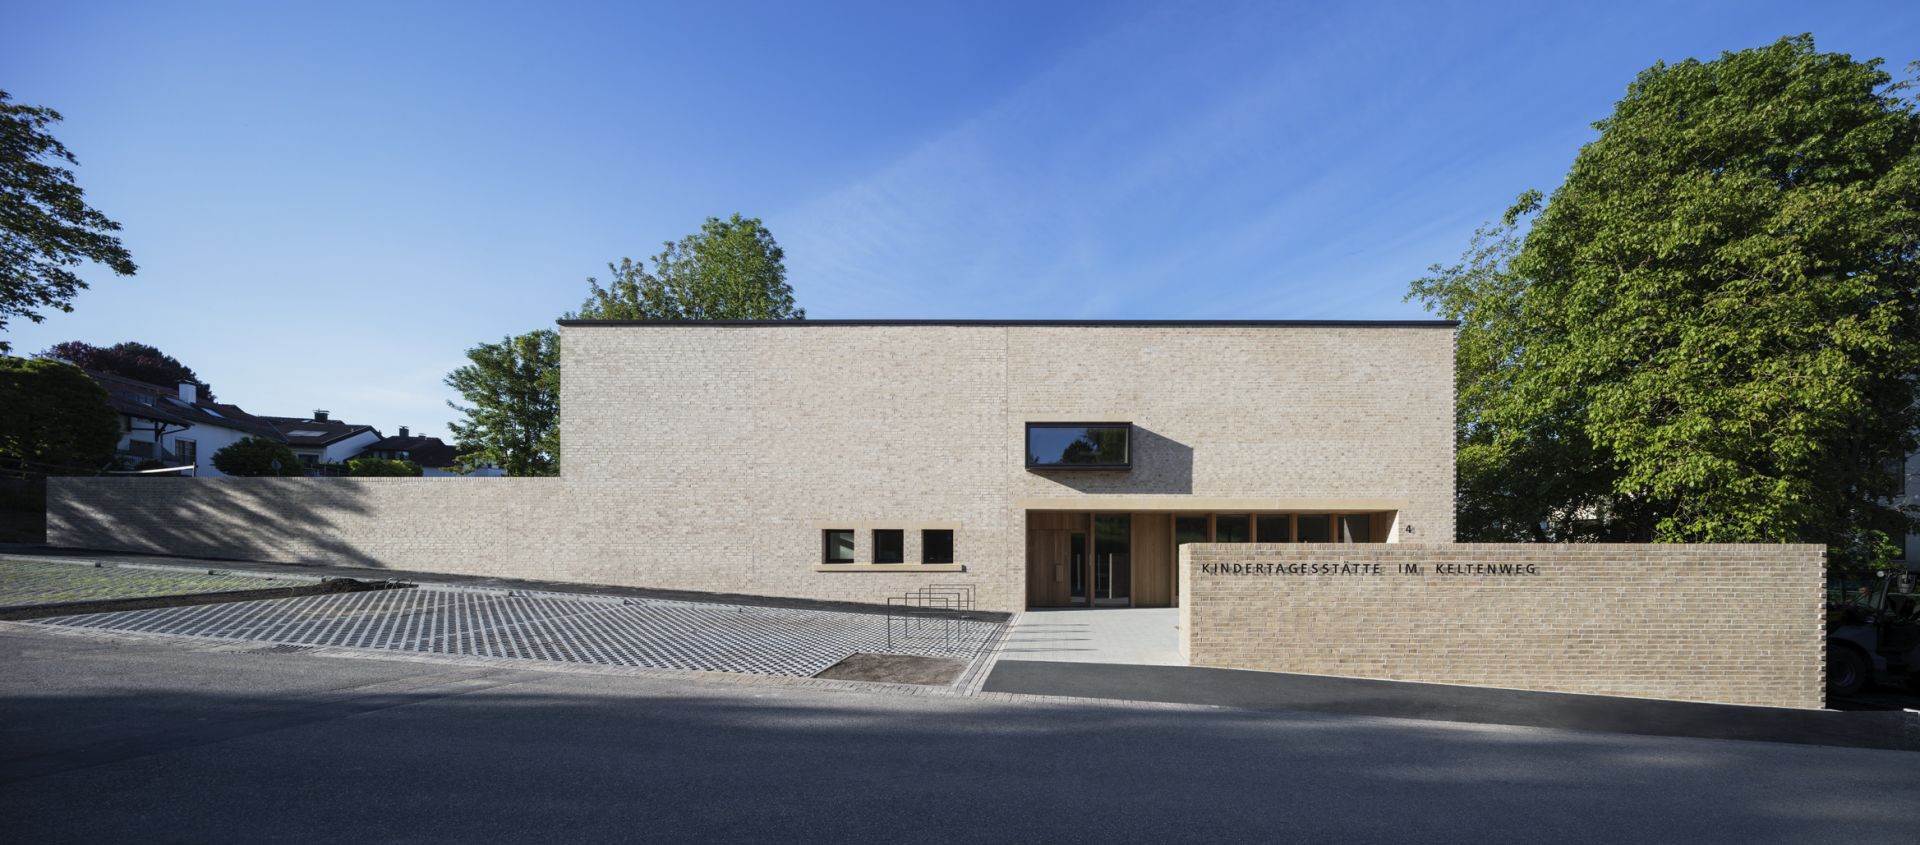 Baden-Baden, Keltenweg, Neubau Kindertagesstätte